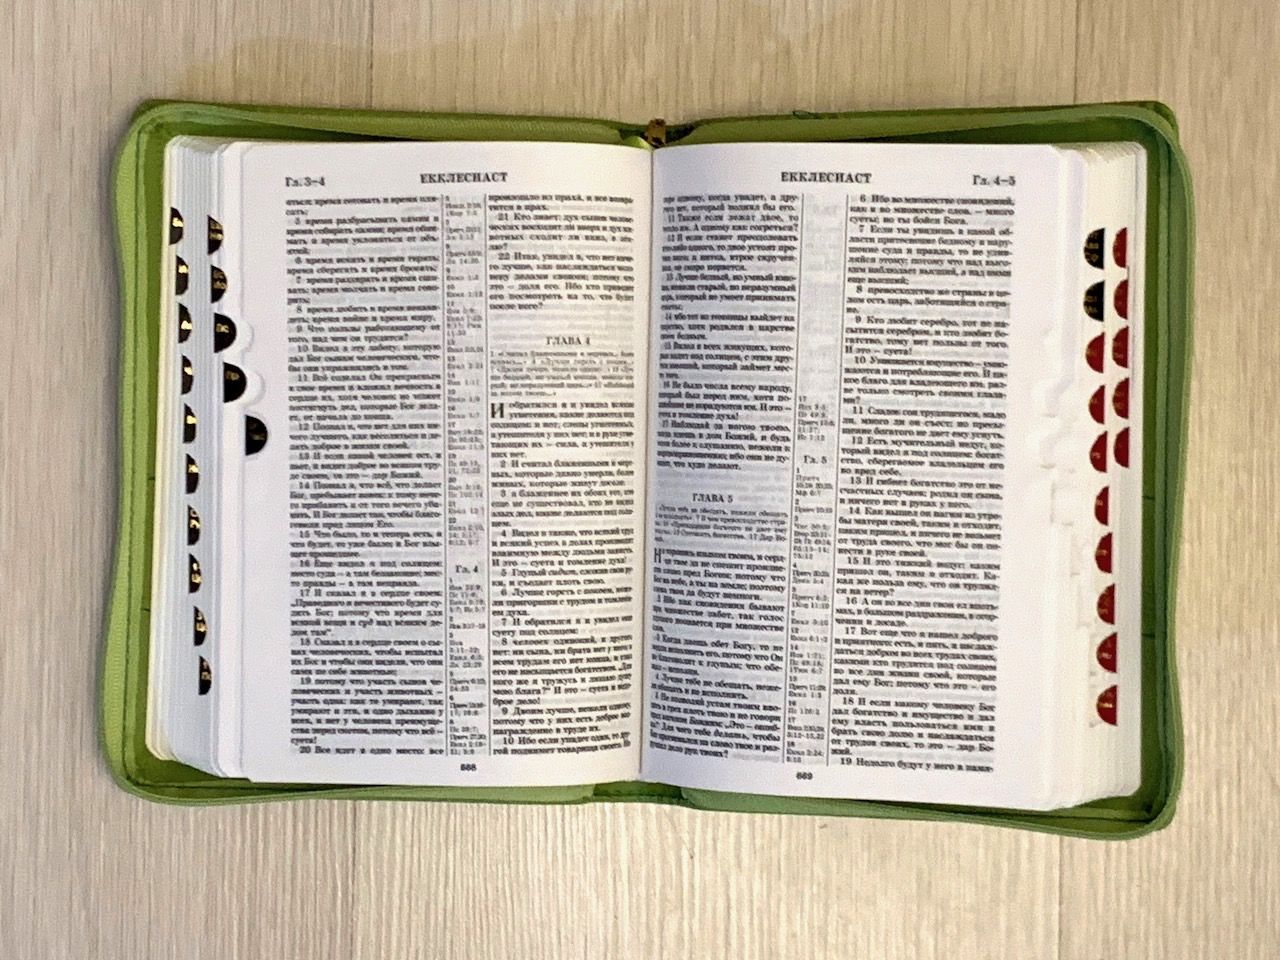 БИБЛИЯ 046zti формат, переплет из искусственной кожи на молнии с индексами, надпись золотом "Библия", цвет салатовый, средний формат, 132*182 мм, цветные карты, шрифт 12 кегель